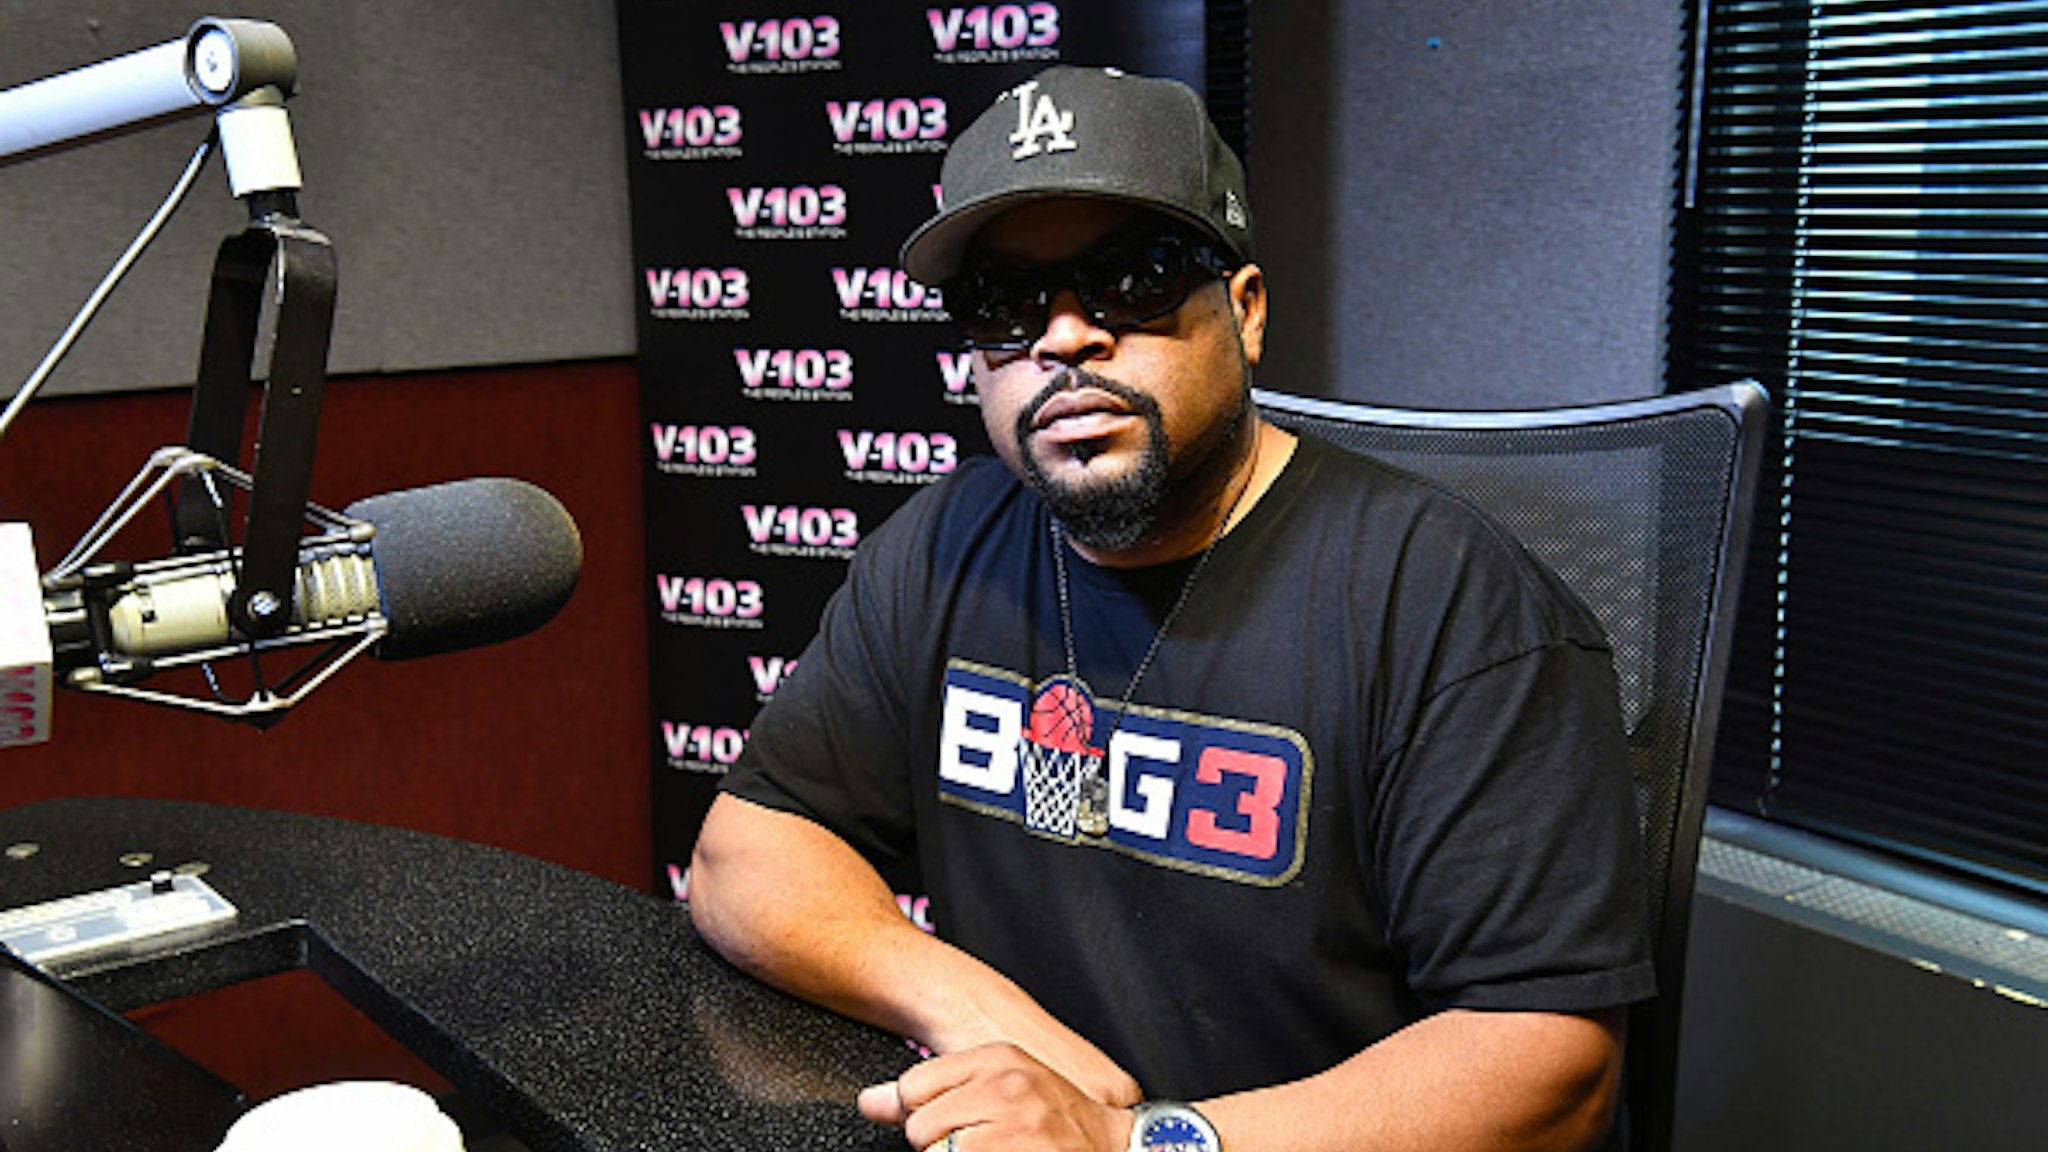 ATLANTA, GA - AUGUST 09: Rapper Ice Cube visits V-103 Atlanta Studios on August 9, 2018 in Atlanta, Georgia.